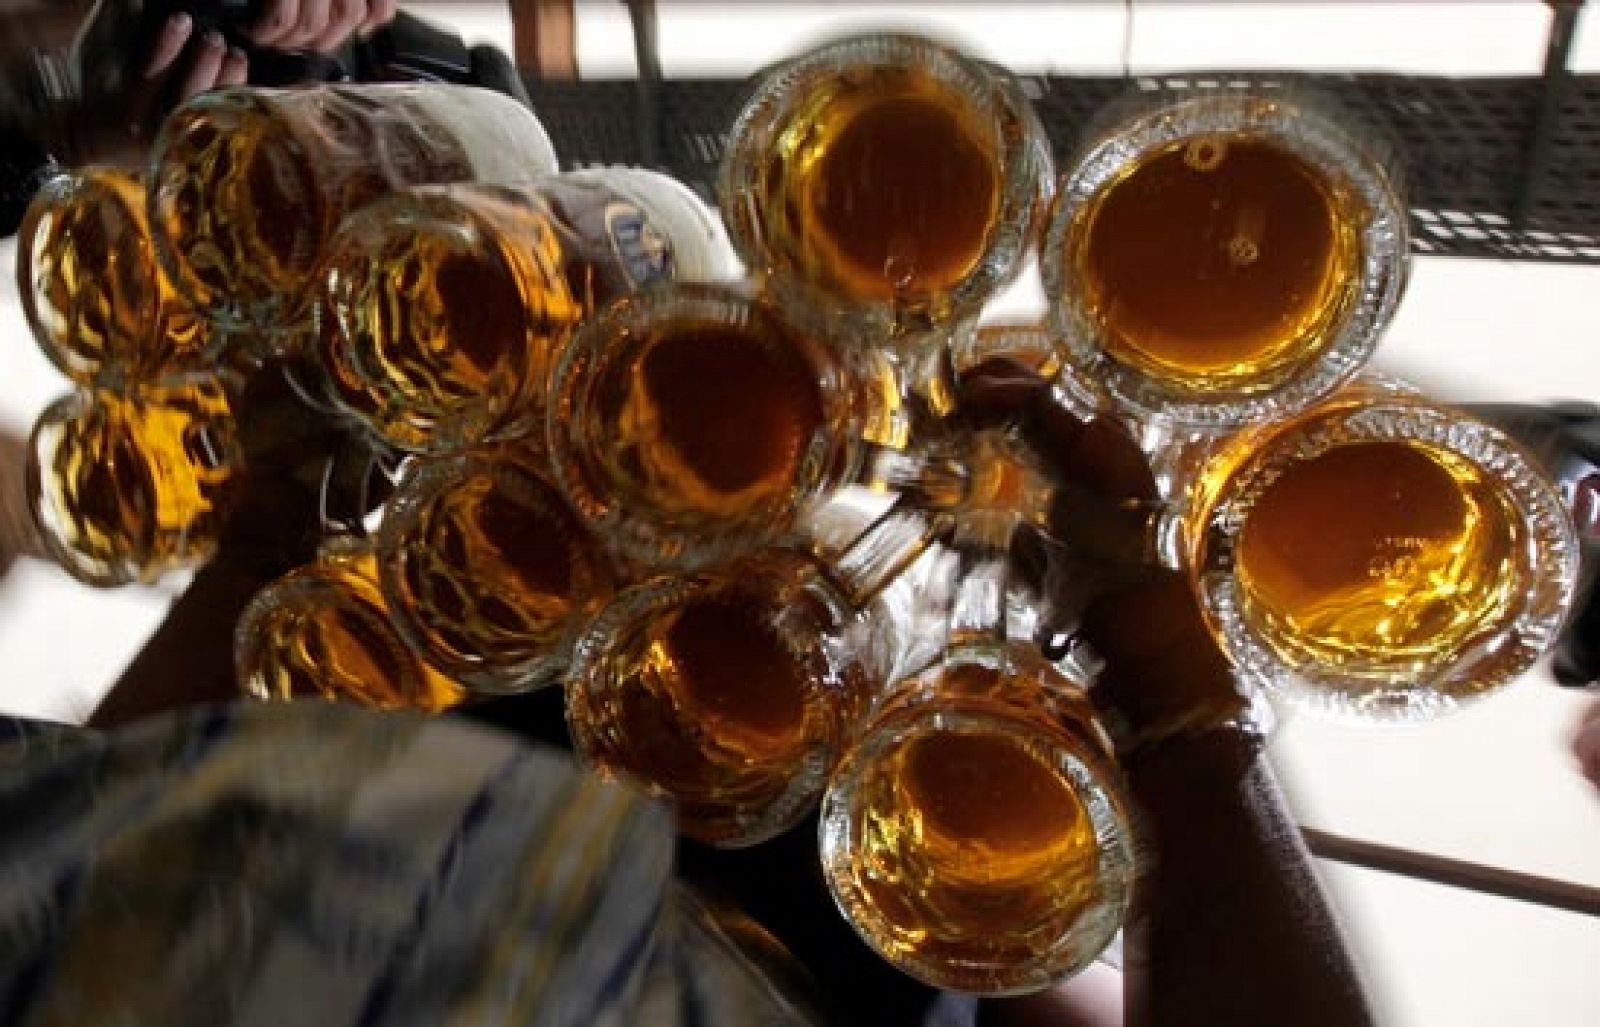 Como los menores no pueden consumir alcohol en los bares la mayoría lo hace  en "el botellón"